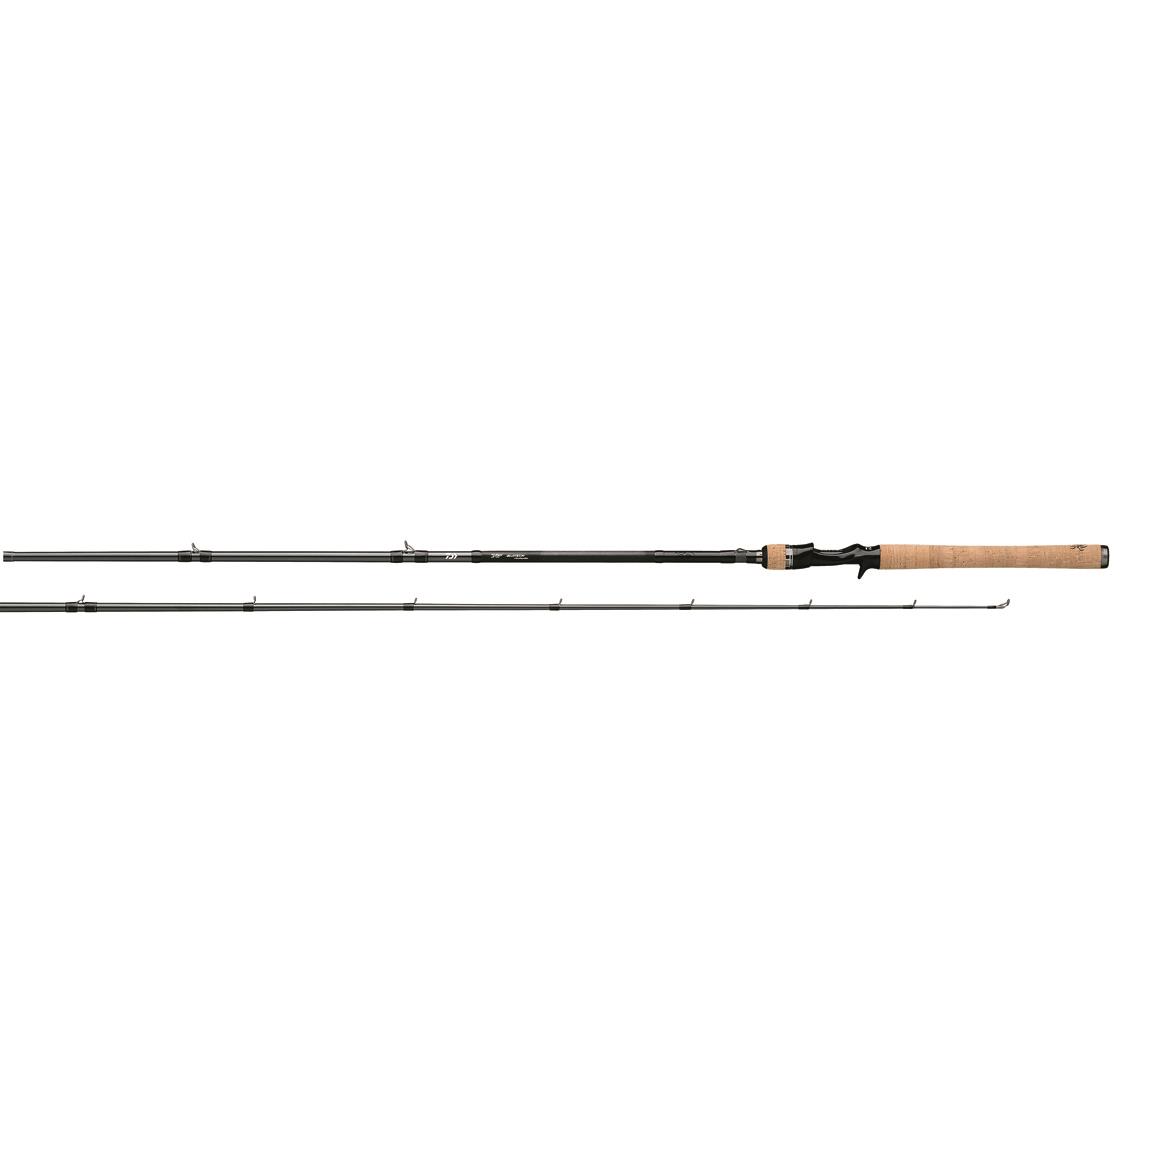 Daiwa Tatula Casting Rod, 7'3" Length, Medium Heavy Power, Fast Action